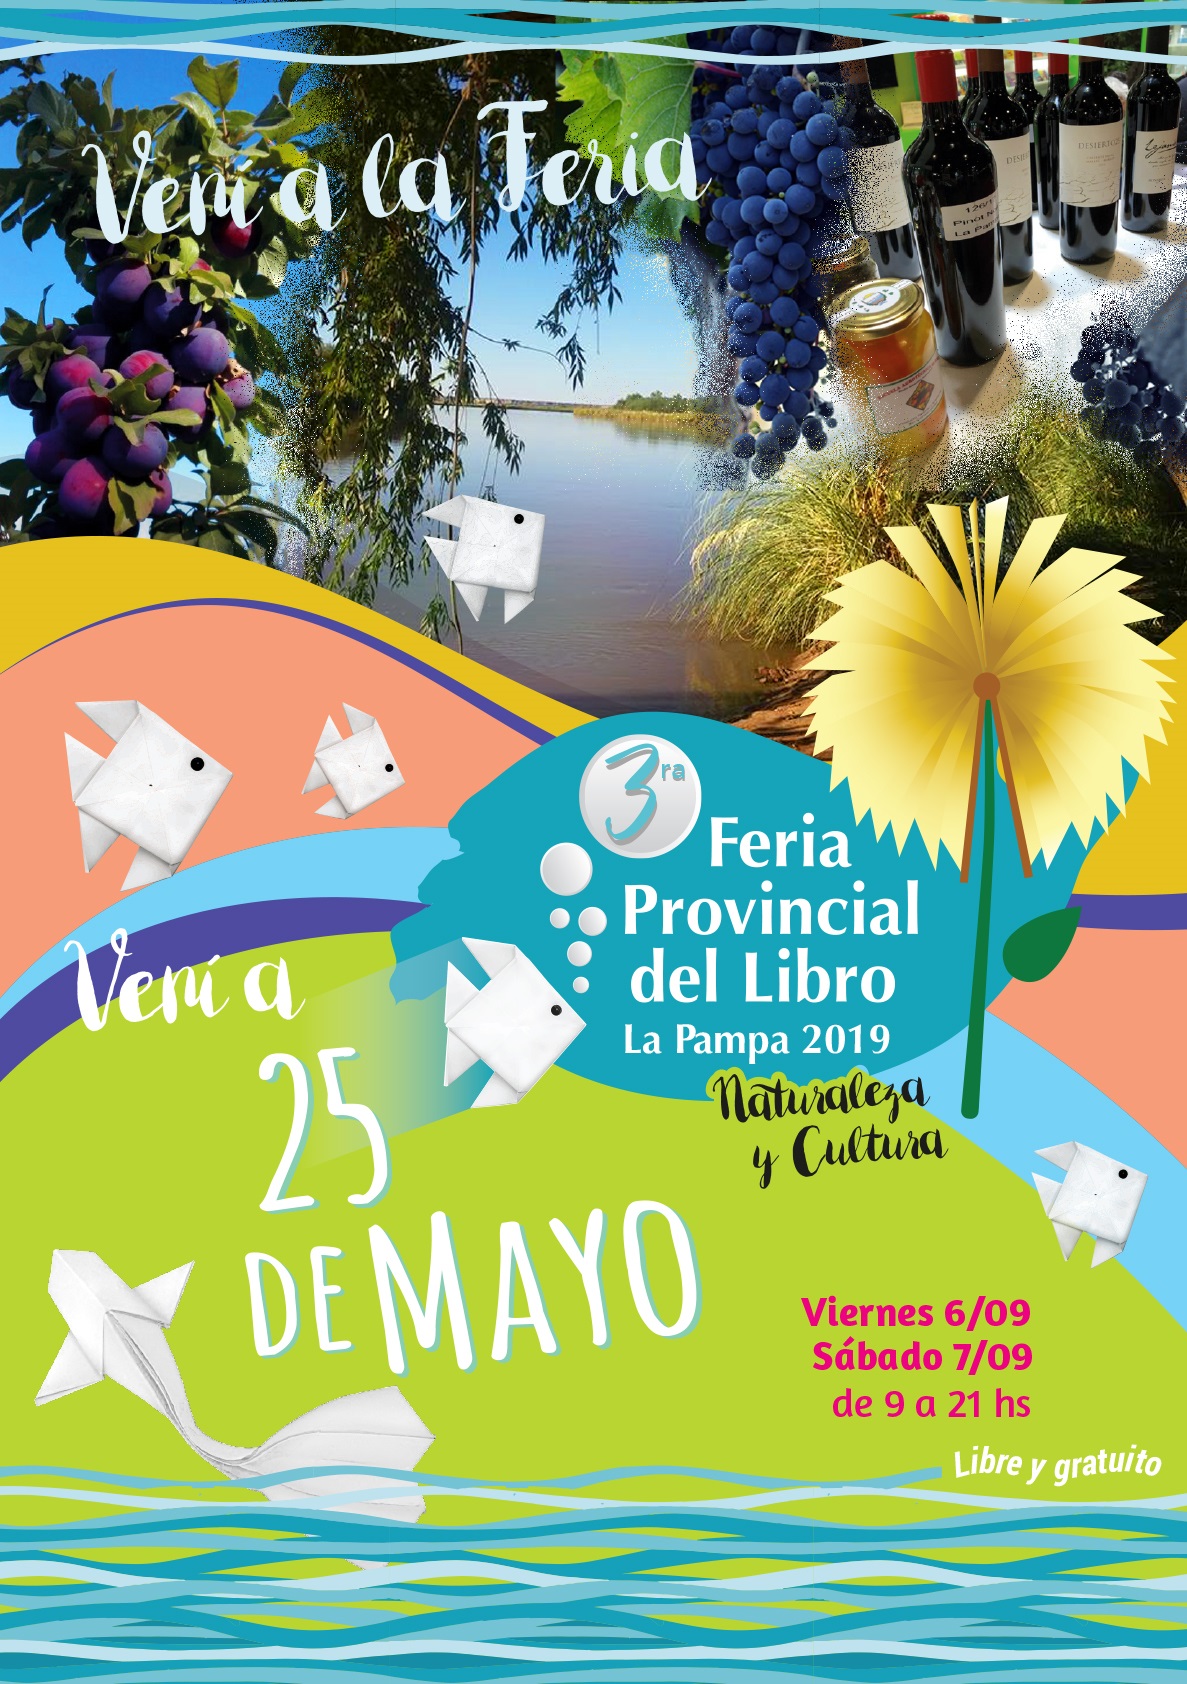 La 3° Feria Provincial del Libro será en 25 de Mayo